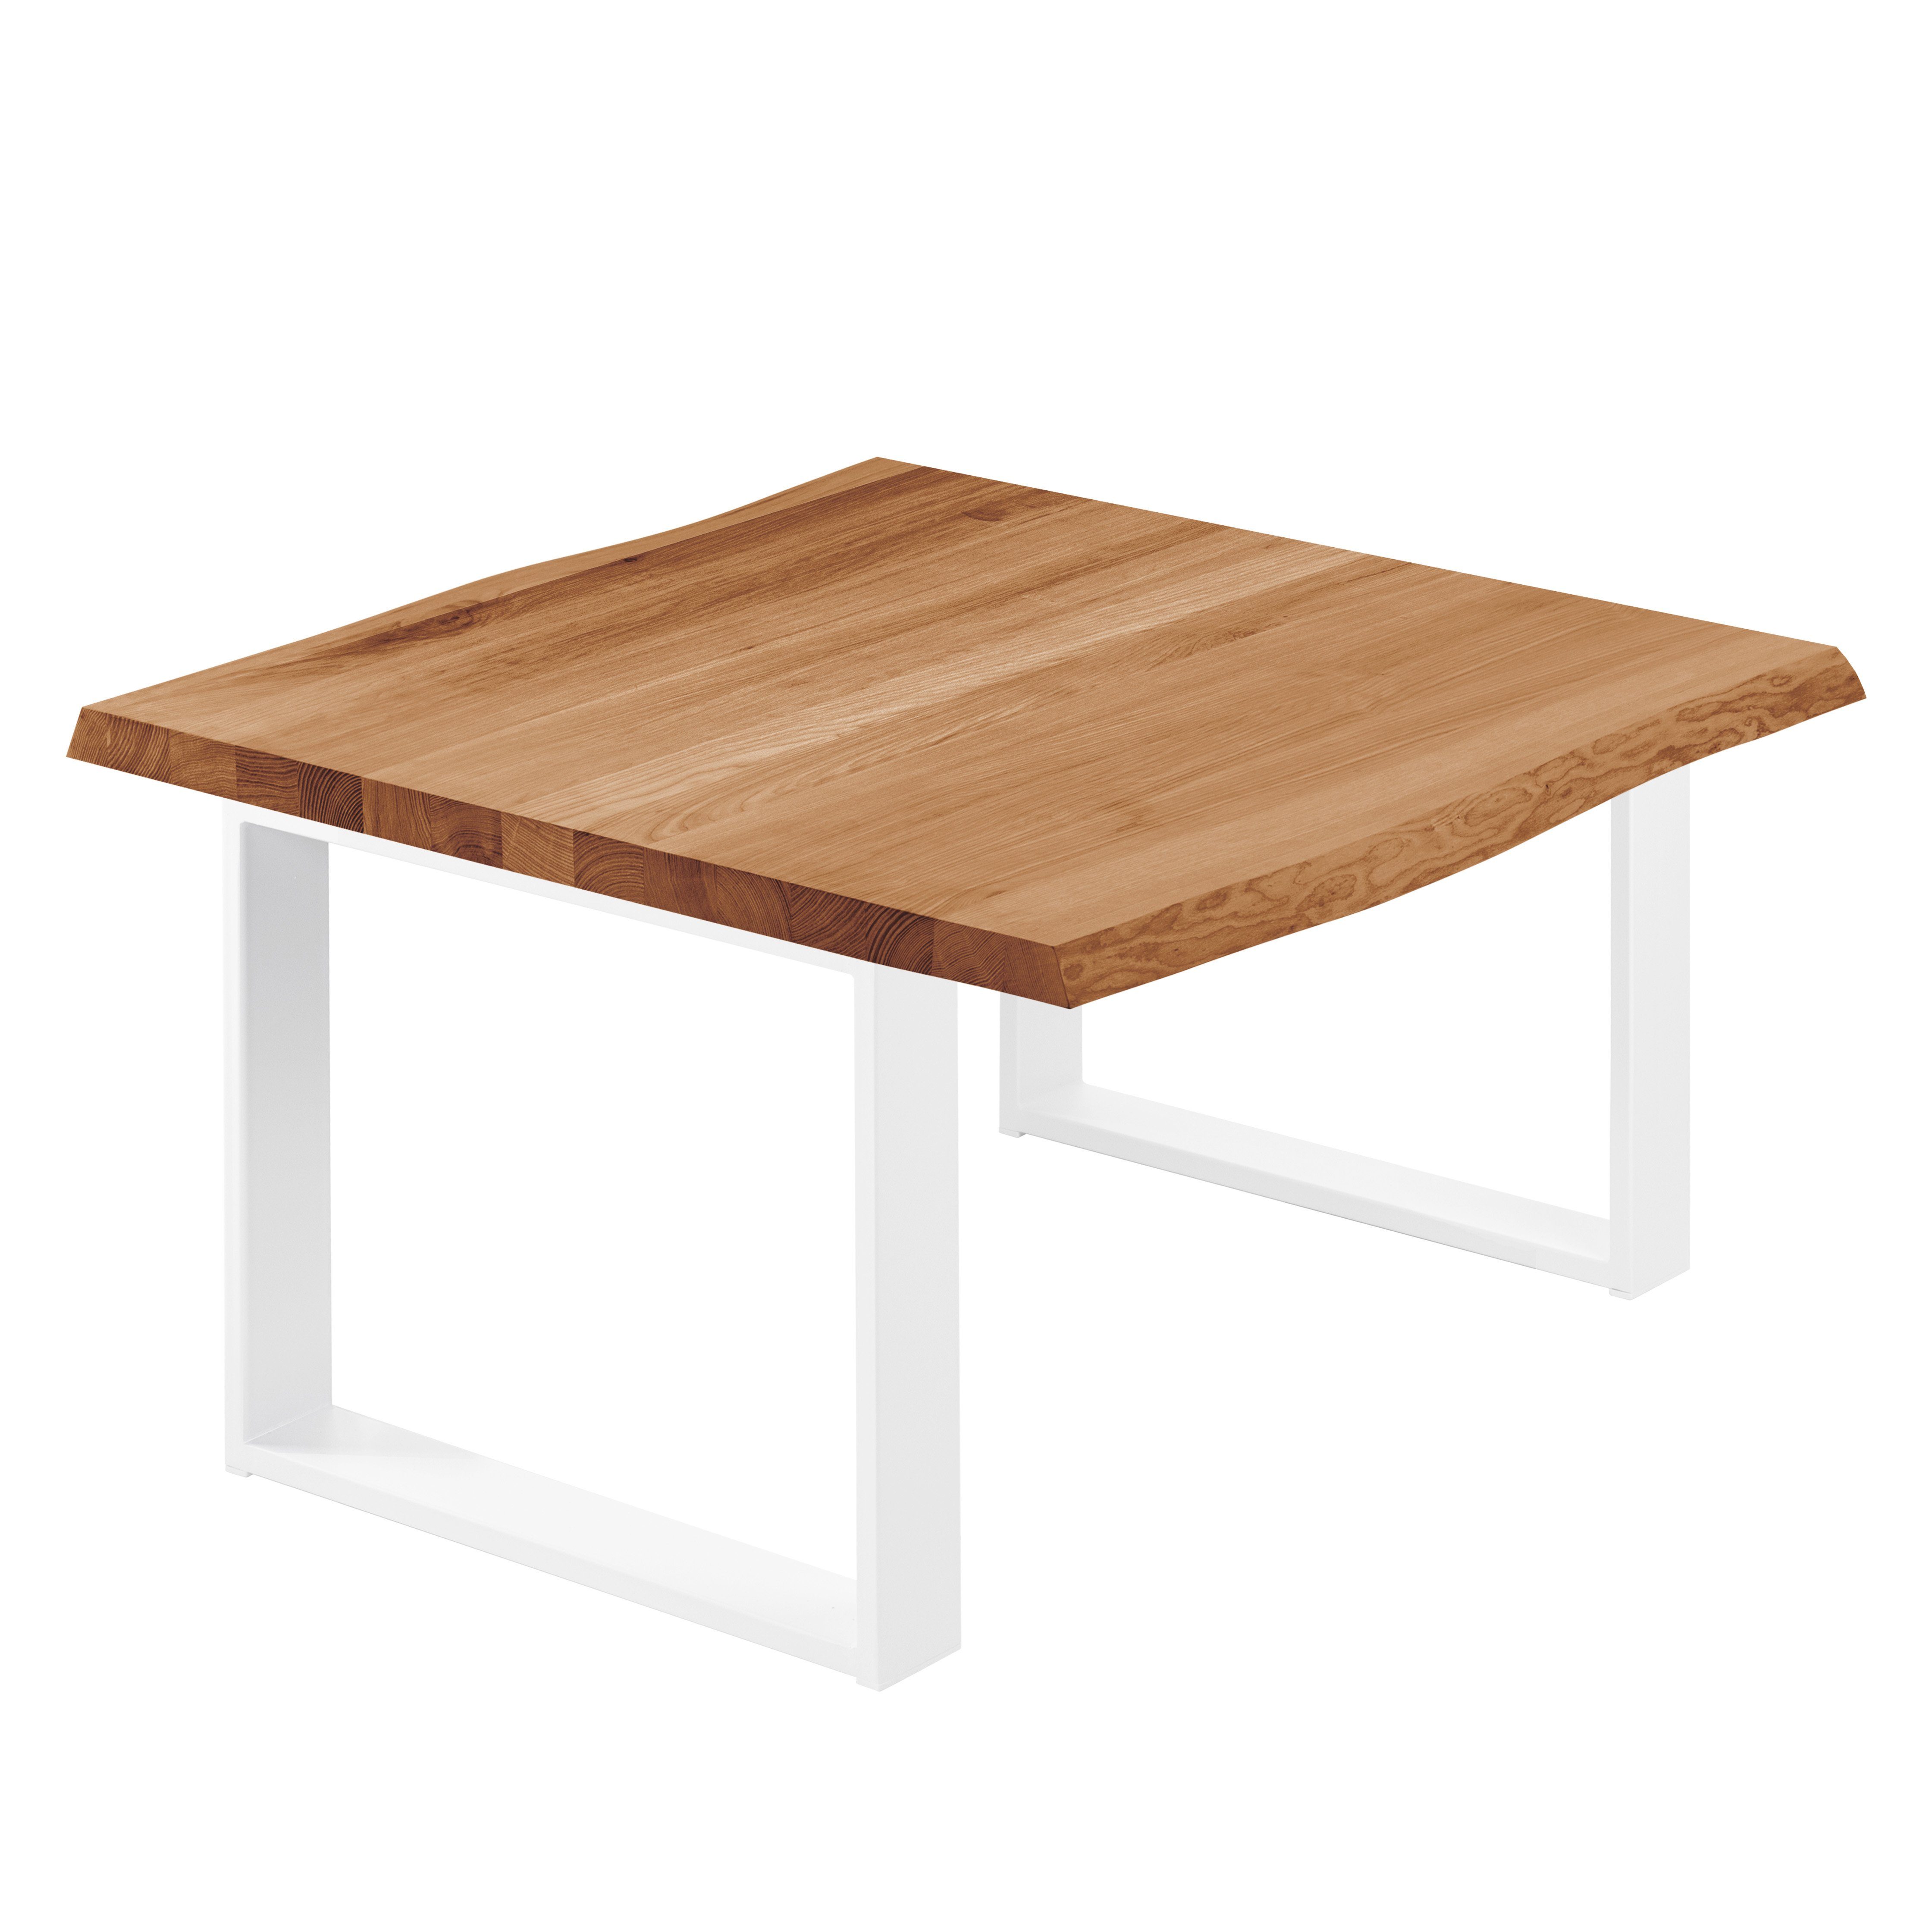 LAMO Manufaktur Baumkantentisch Modern Esstisch (1 inkl. massiv Tisch), Massivholz | Baumkante Metallgestell Weiß Dunkel